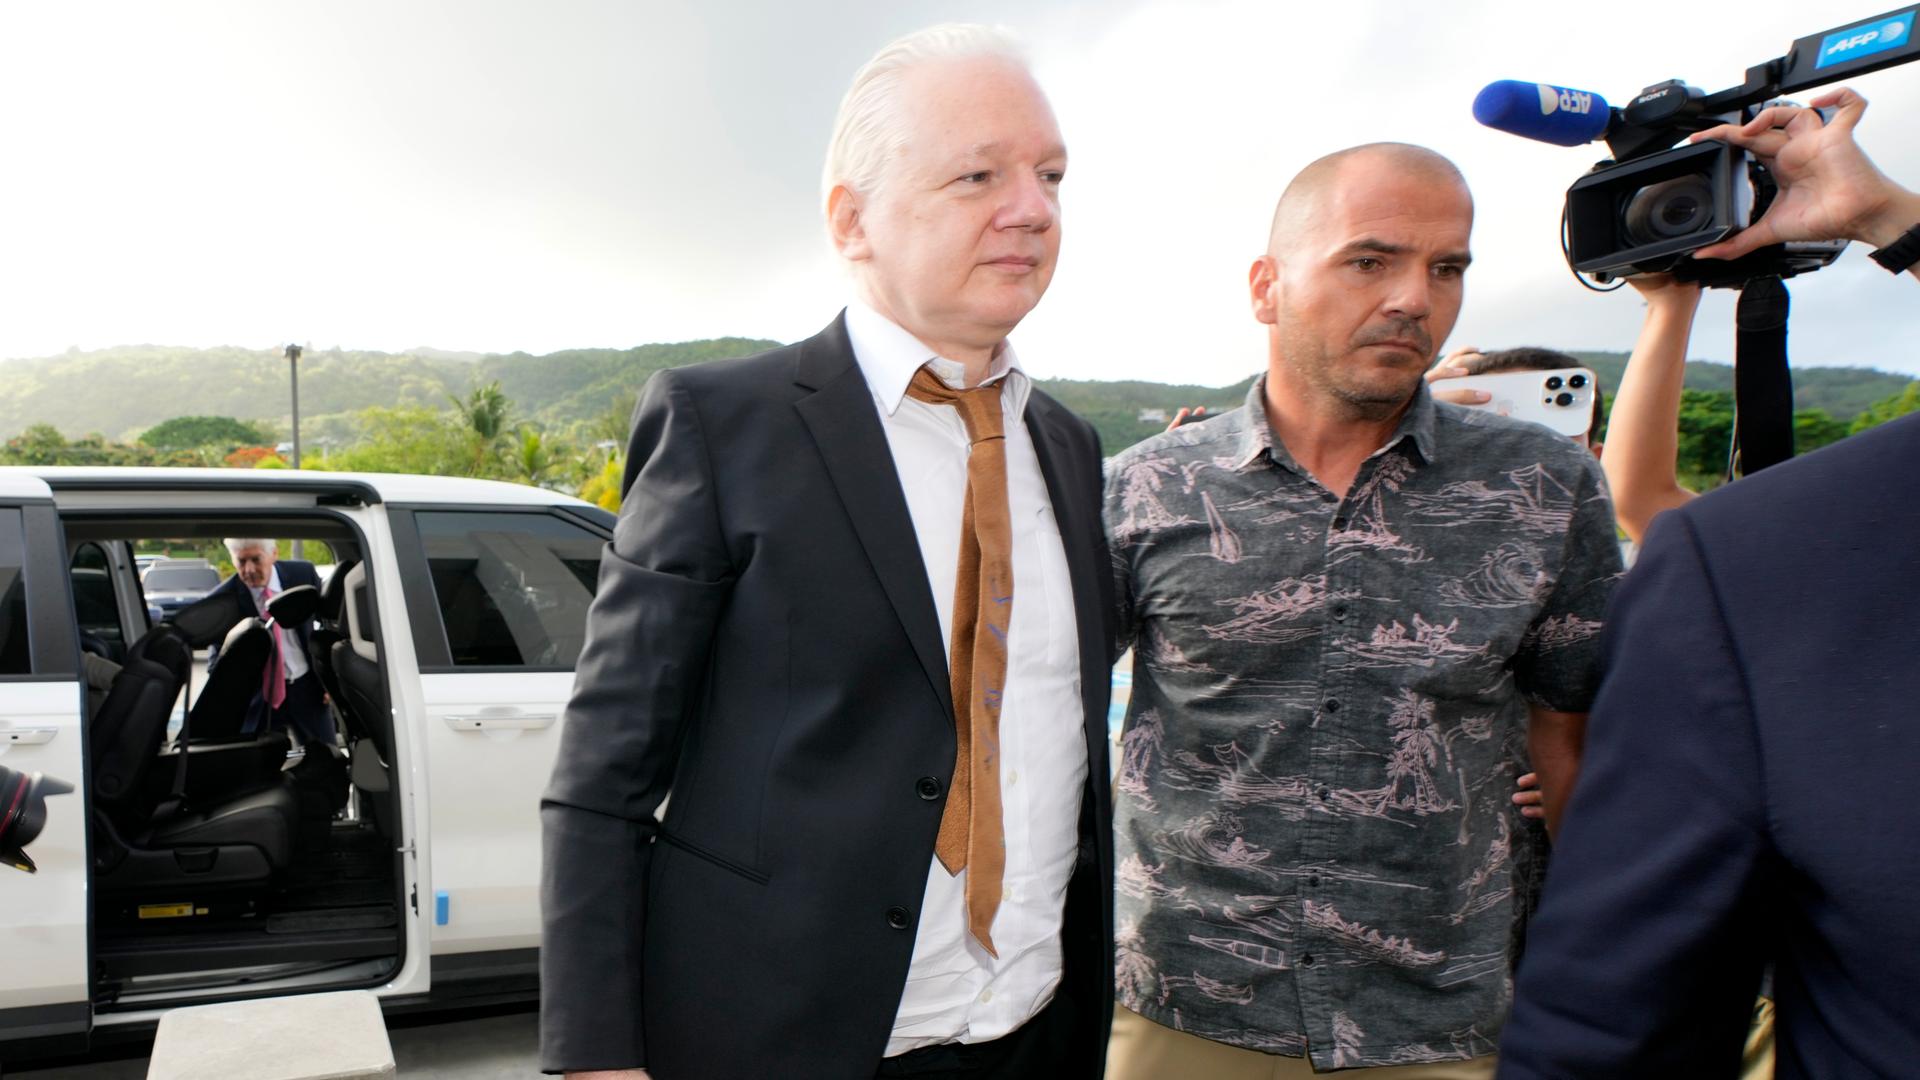 Assange mit schwarzem Anzug und brauner Krawatte wird von einem Mann im Haiwaii-Hemd eskortiert. Dahinter haltne zwei Personen eine kamera und ein handy hoch. Im Hintergrund das Auto, mit dem Assange eintraf.